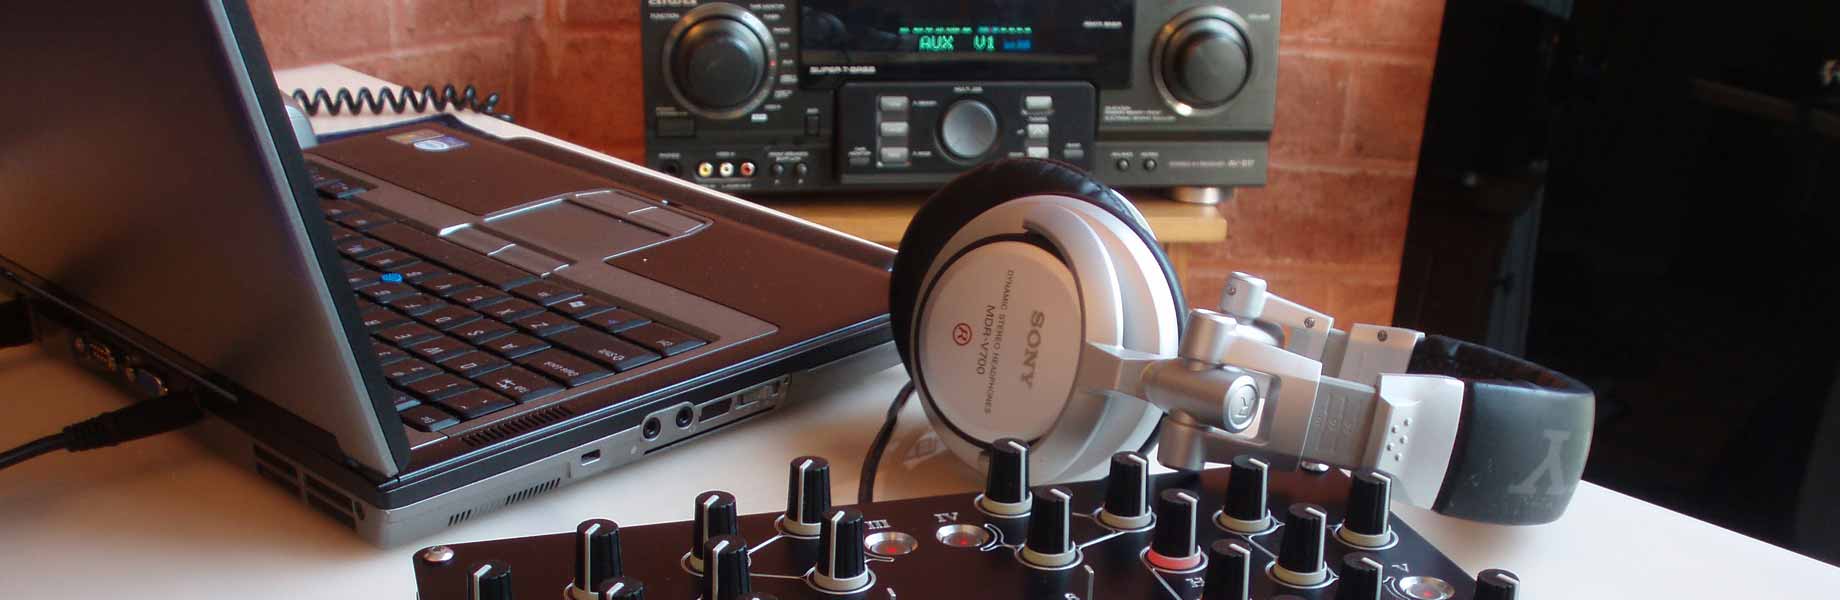 Matériel de base d'un DJ : PC, ampli et un mixer Aurora 224